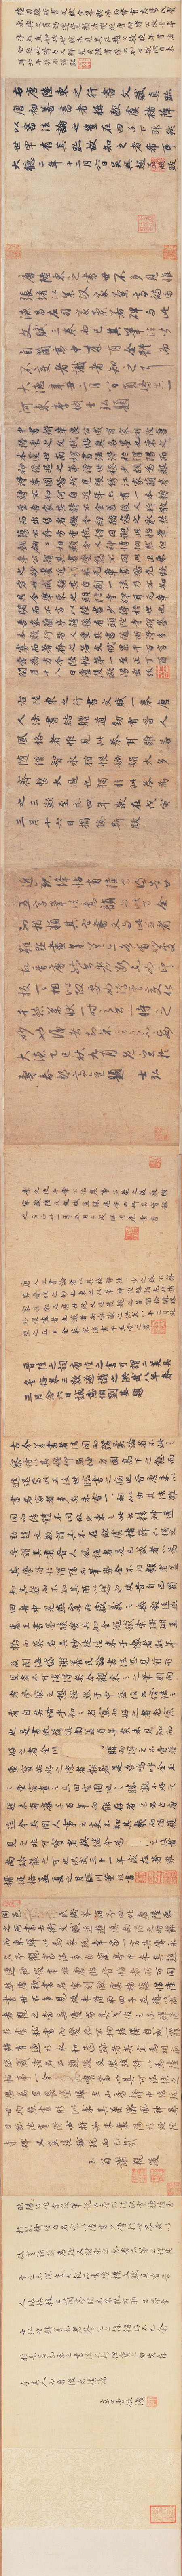 陆柬之行楷《文赋》(横屏)-台北故宫博物院(图2)